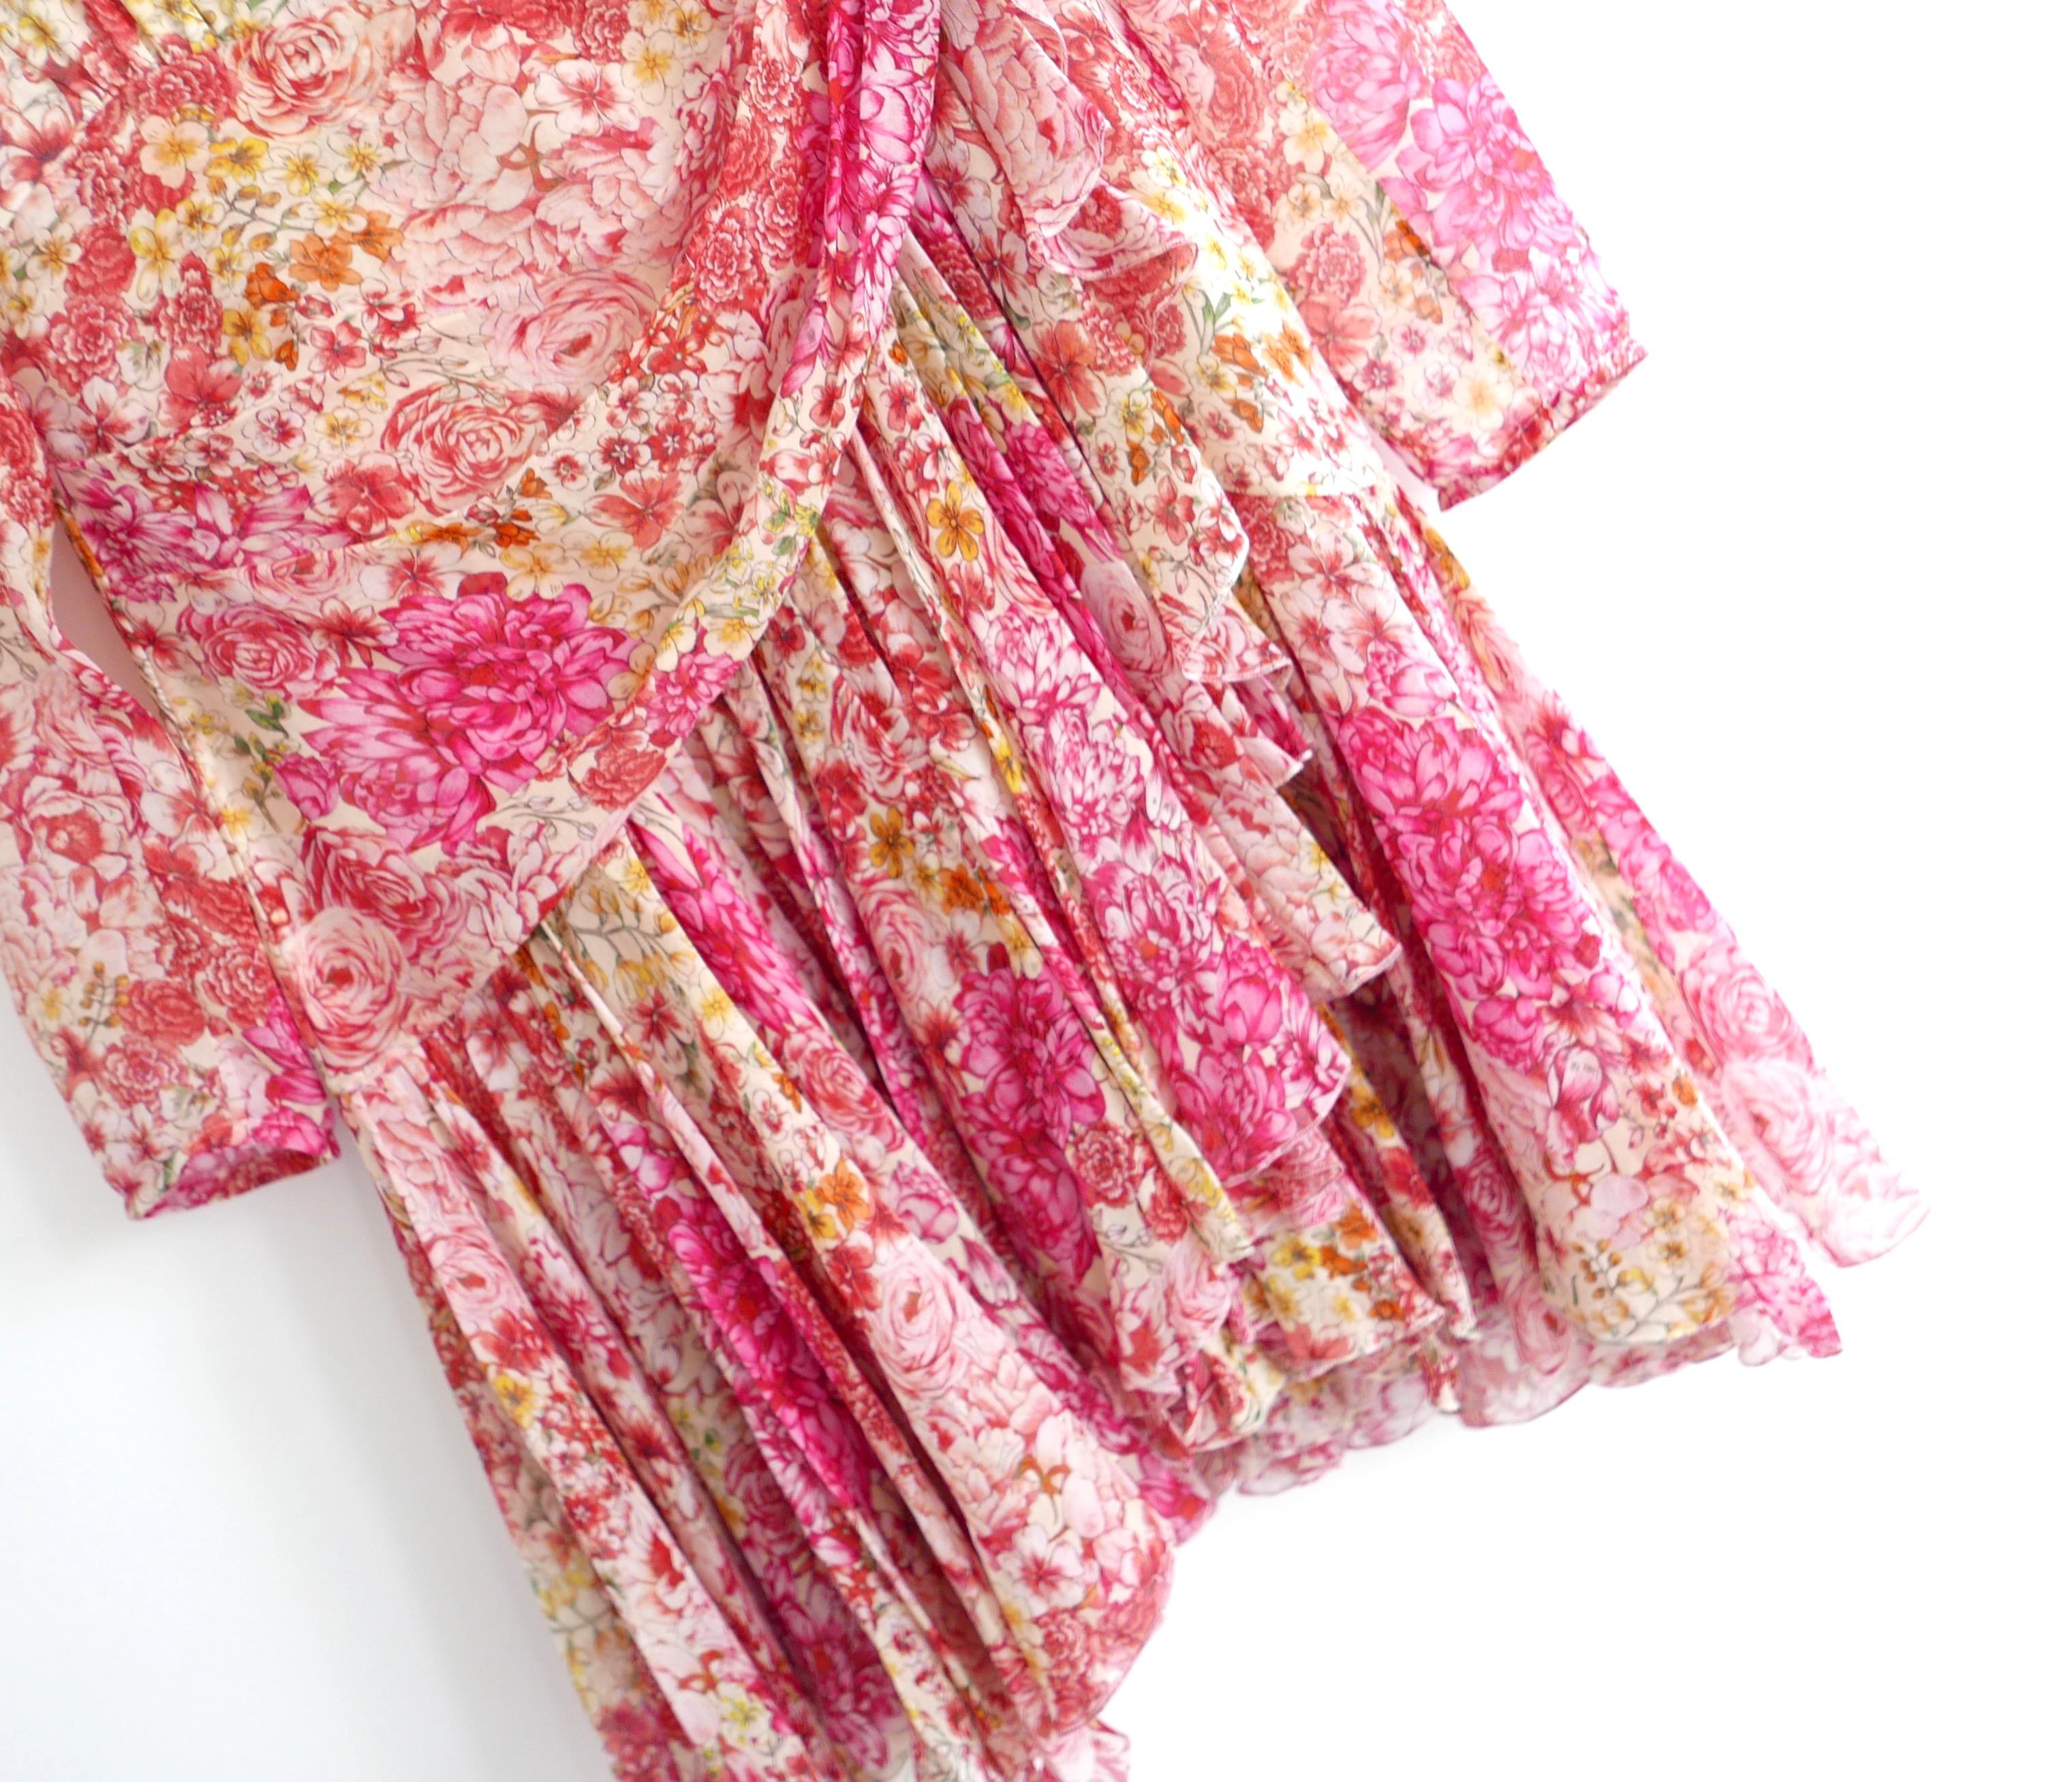 Robe en soie florale hyper féminine Giambattista Valli, issue de la collection printemps 2019. Acheté pour 2950 livres sterling et jamais porté. Réalisé dans une superbe mousseline de soie florale multicolore, entièrement doublée de polyester. Elle